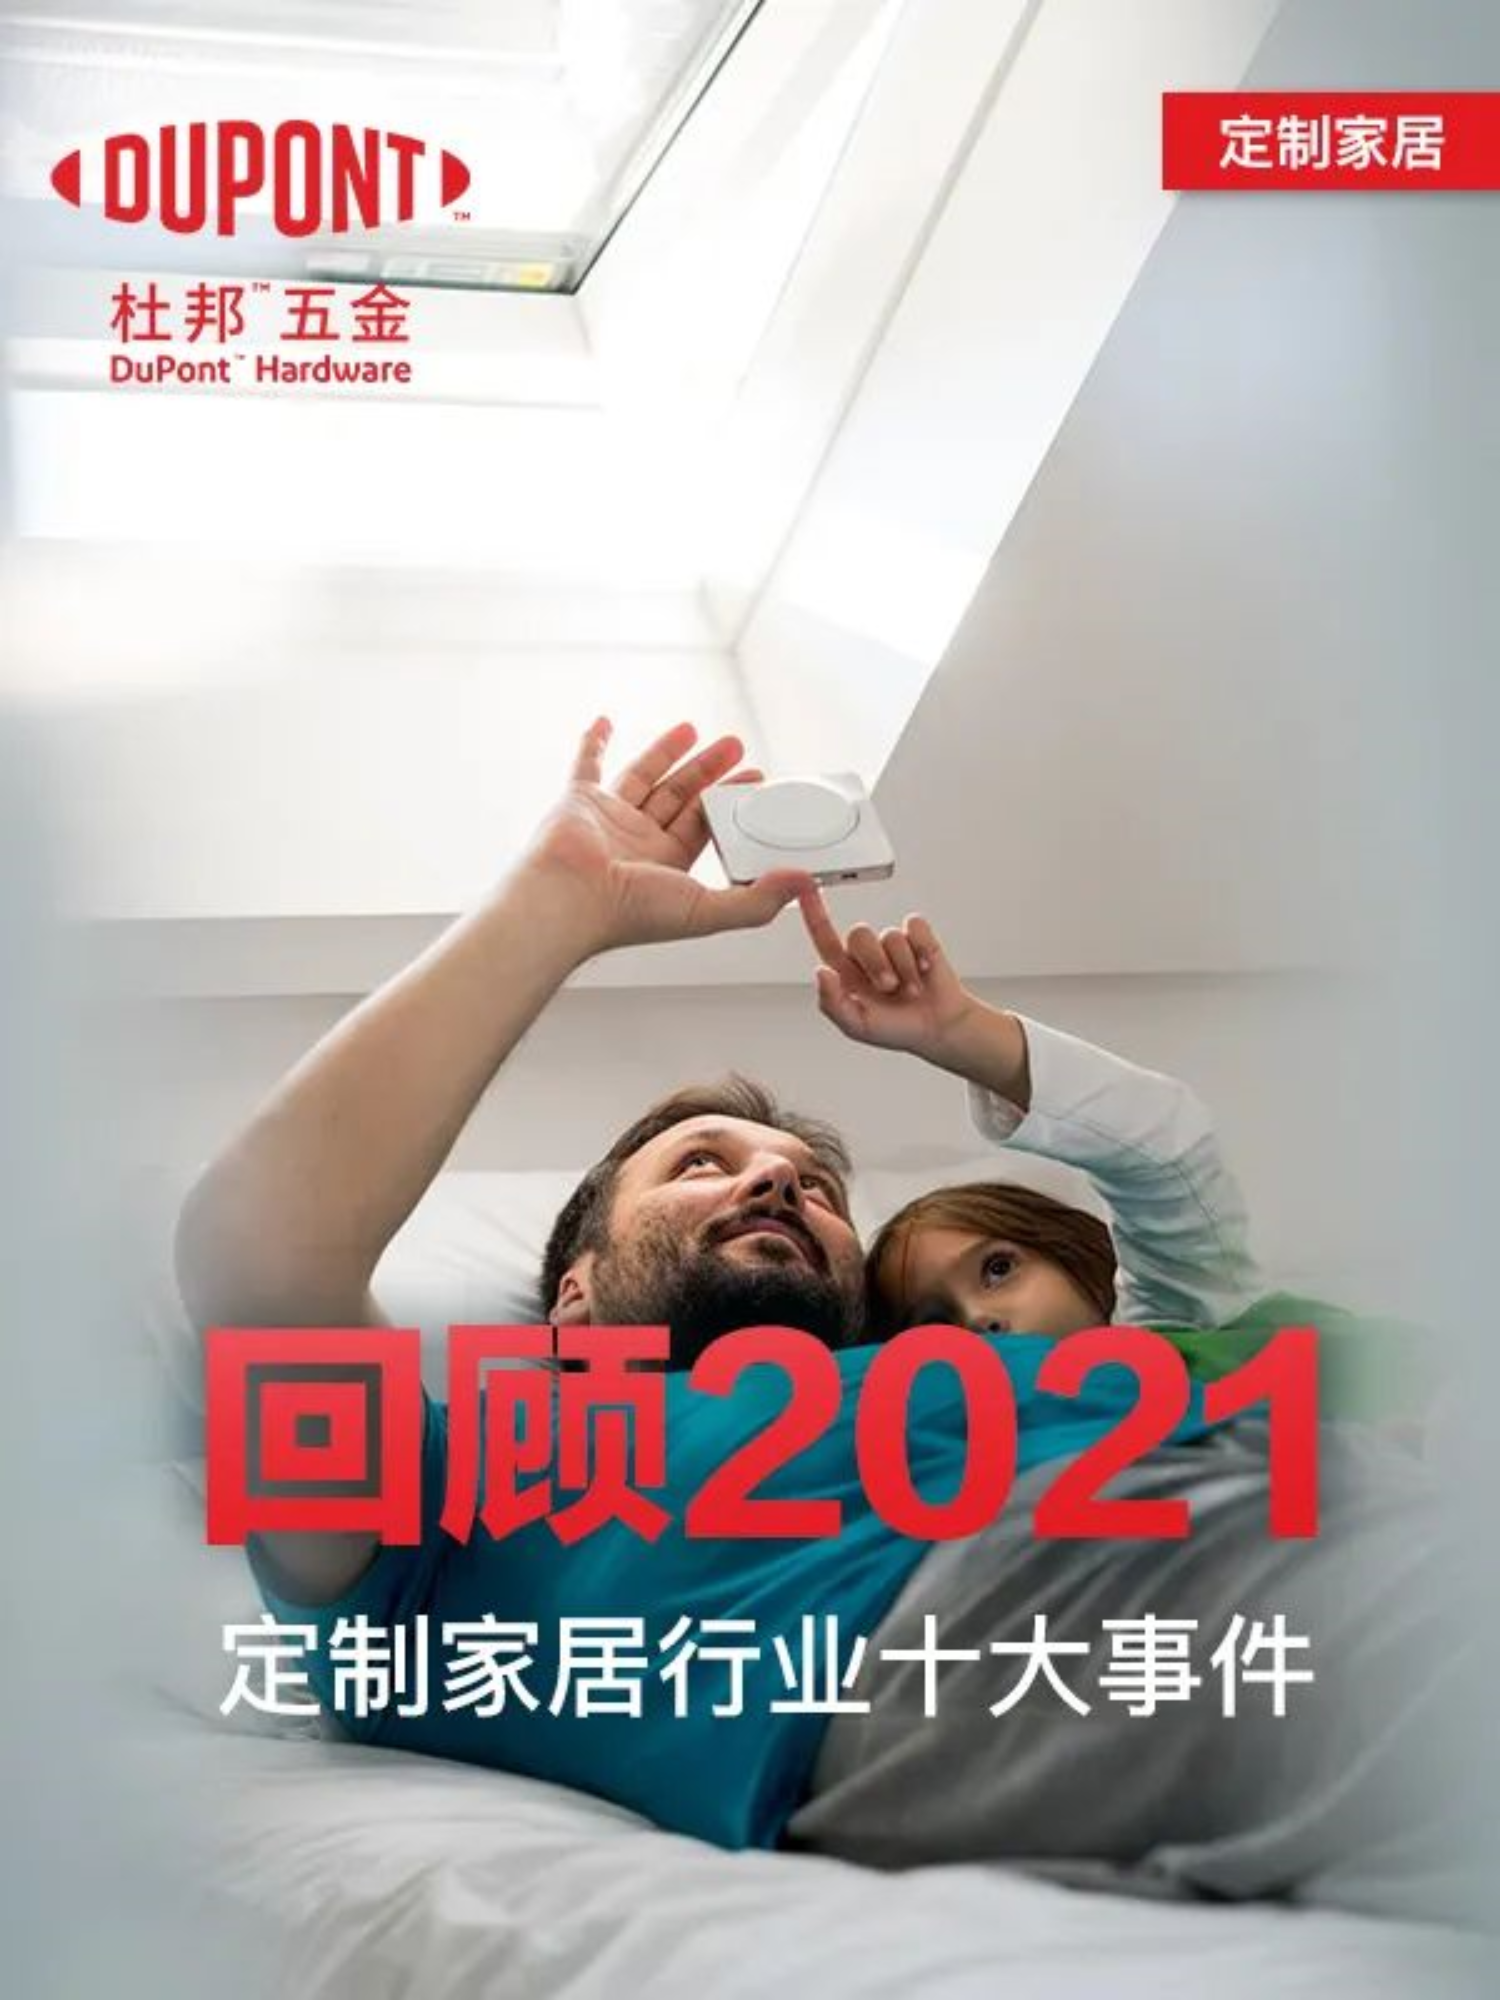 Recenze 10 nejlepších bytových doplňků na míru v Číně v roce 2021!